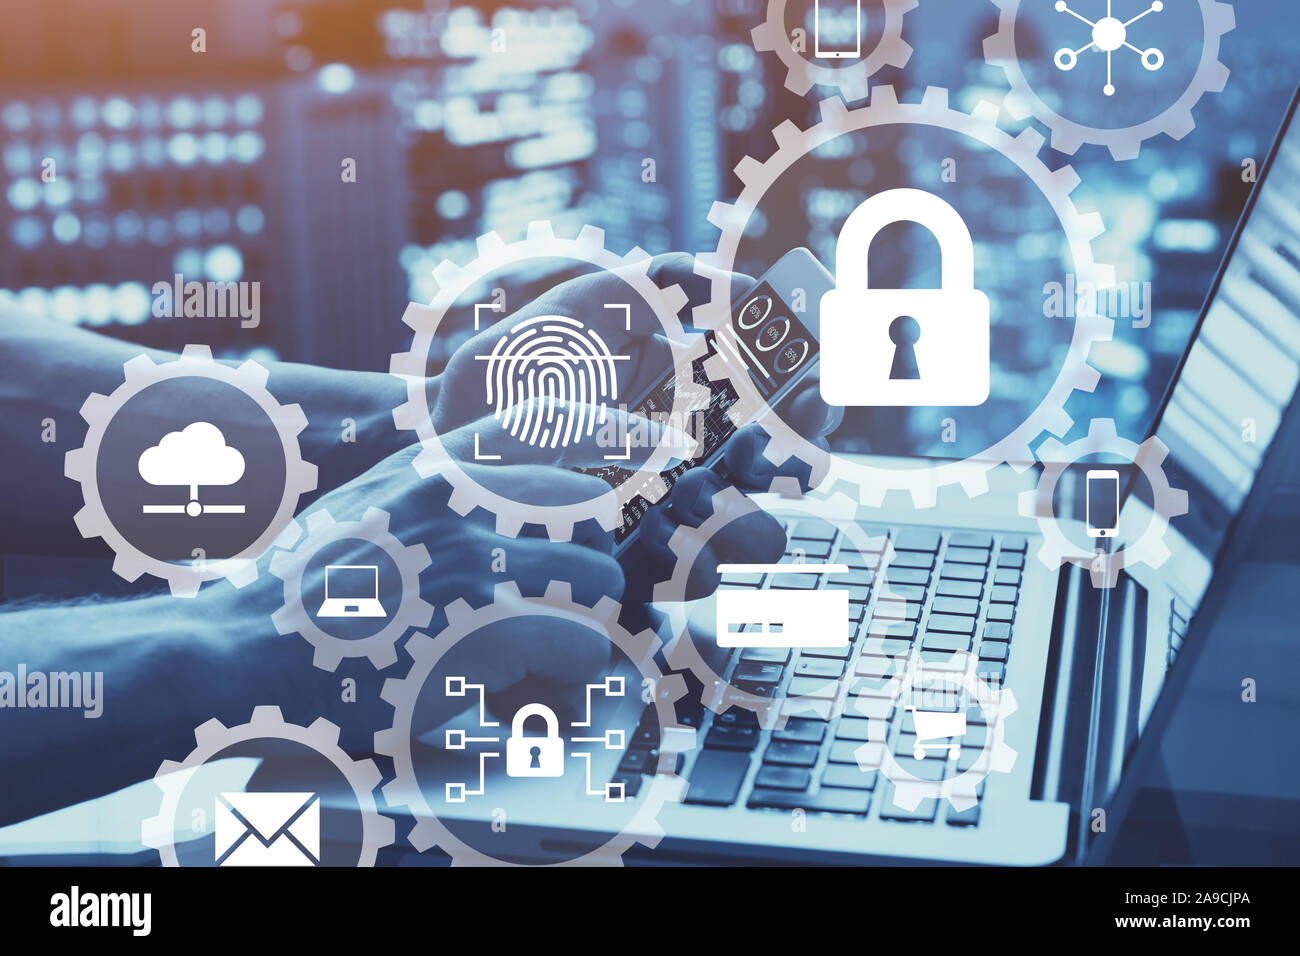 Internet Network Security Konzept mit Ikonen der sicheren Zugriff, Biometrie passwort Technologie, Daten Schutz gegen Cyber Attack, der Cybersicherheit Stockfoto